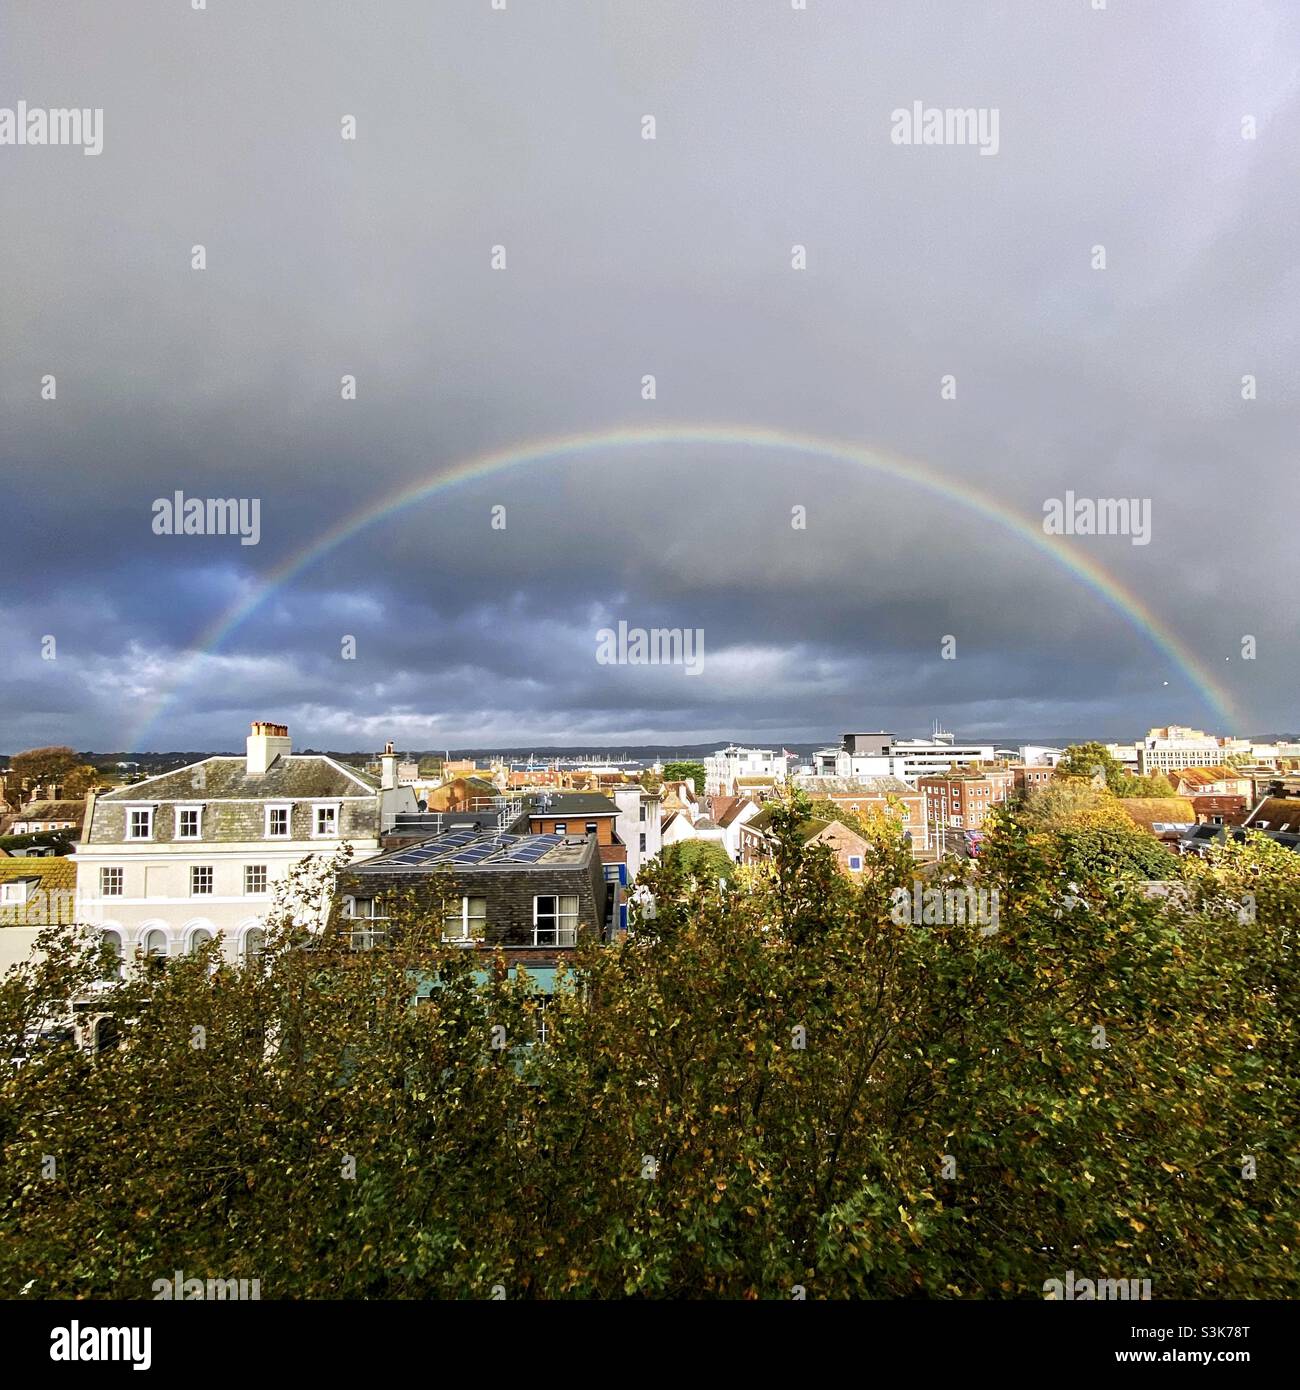 Wetter in Großbritannien: Ein Regenbogen leuchtet während eines kurzen morgendlichen Regensturms über den Häusern von Poole Town. Poole, Dorset, England, Großbritannien. Stockfoto